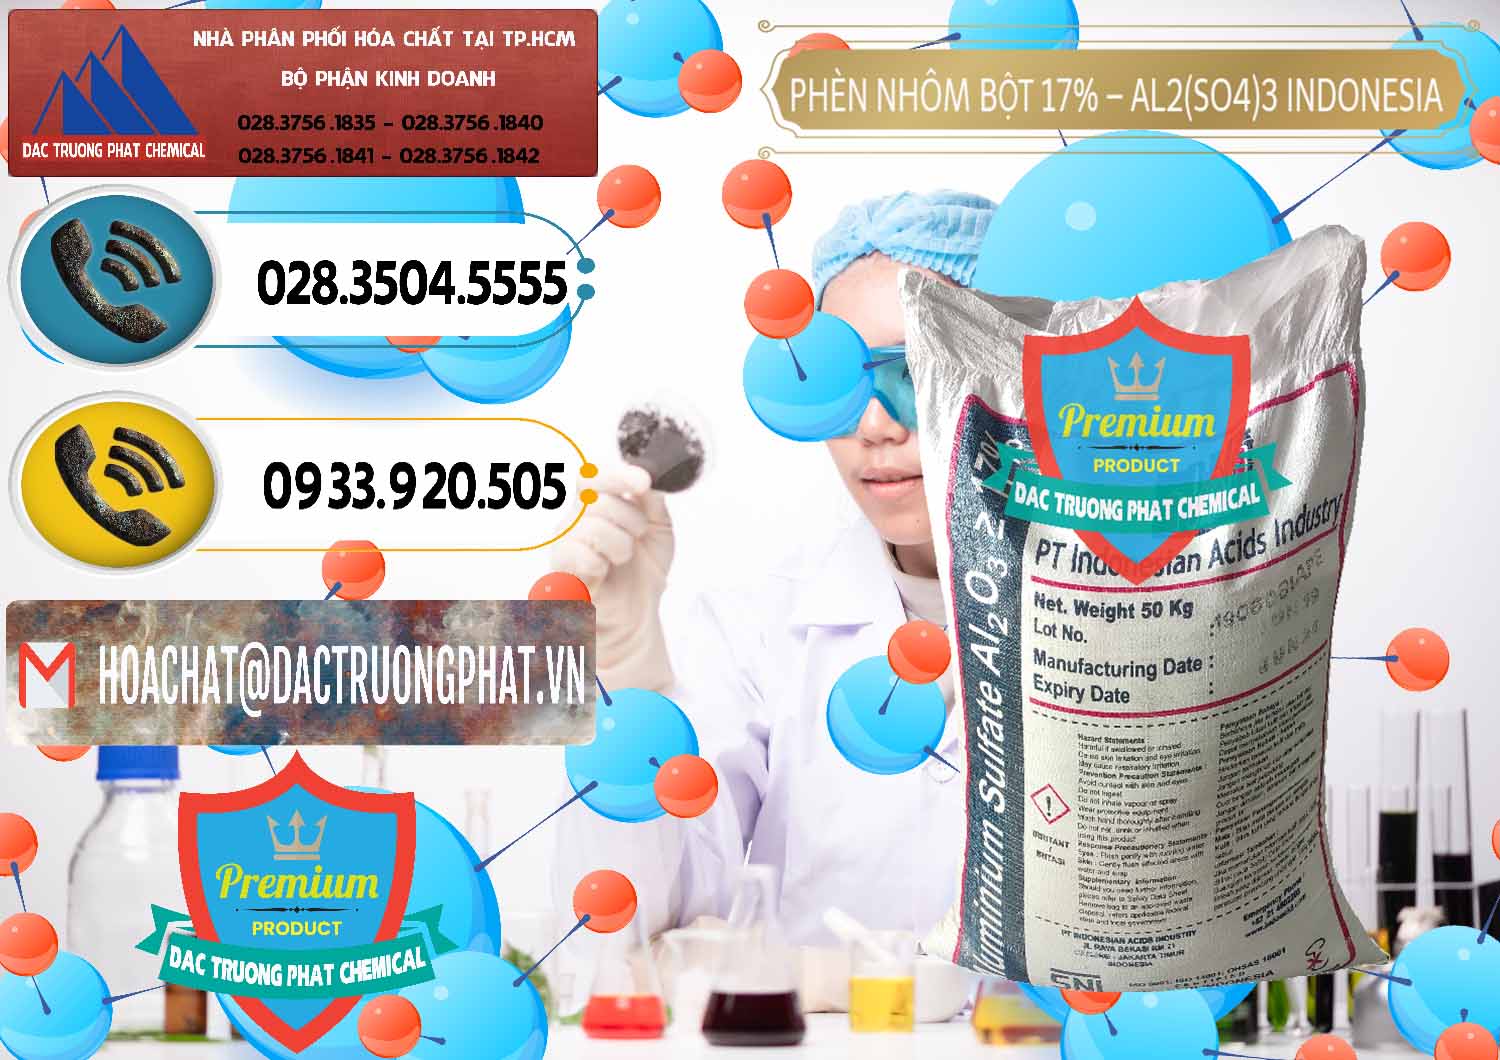 Nơi chuyên cung cấp _ bán Phèn Nhôm Bột - Al2(SO4)3 17% bao 50kg Indonesia - 0112 - Đơn vị chuyên nhập khẩu & phân phối hóa chất tại TP.HCM - hoachatdetnhuom.vn